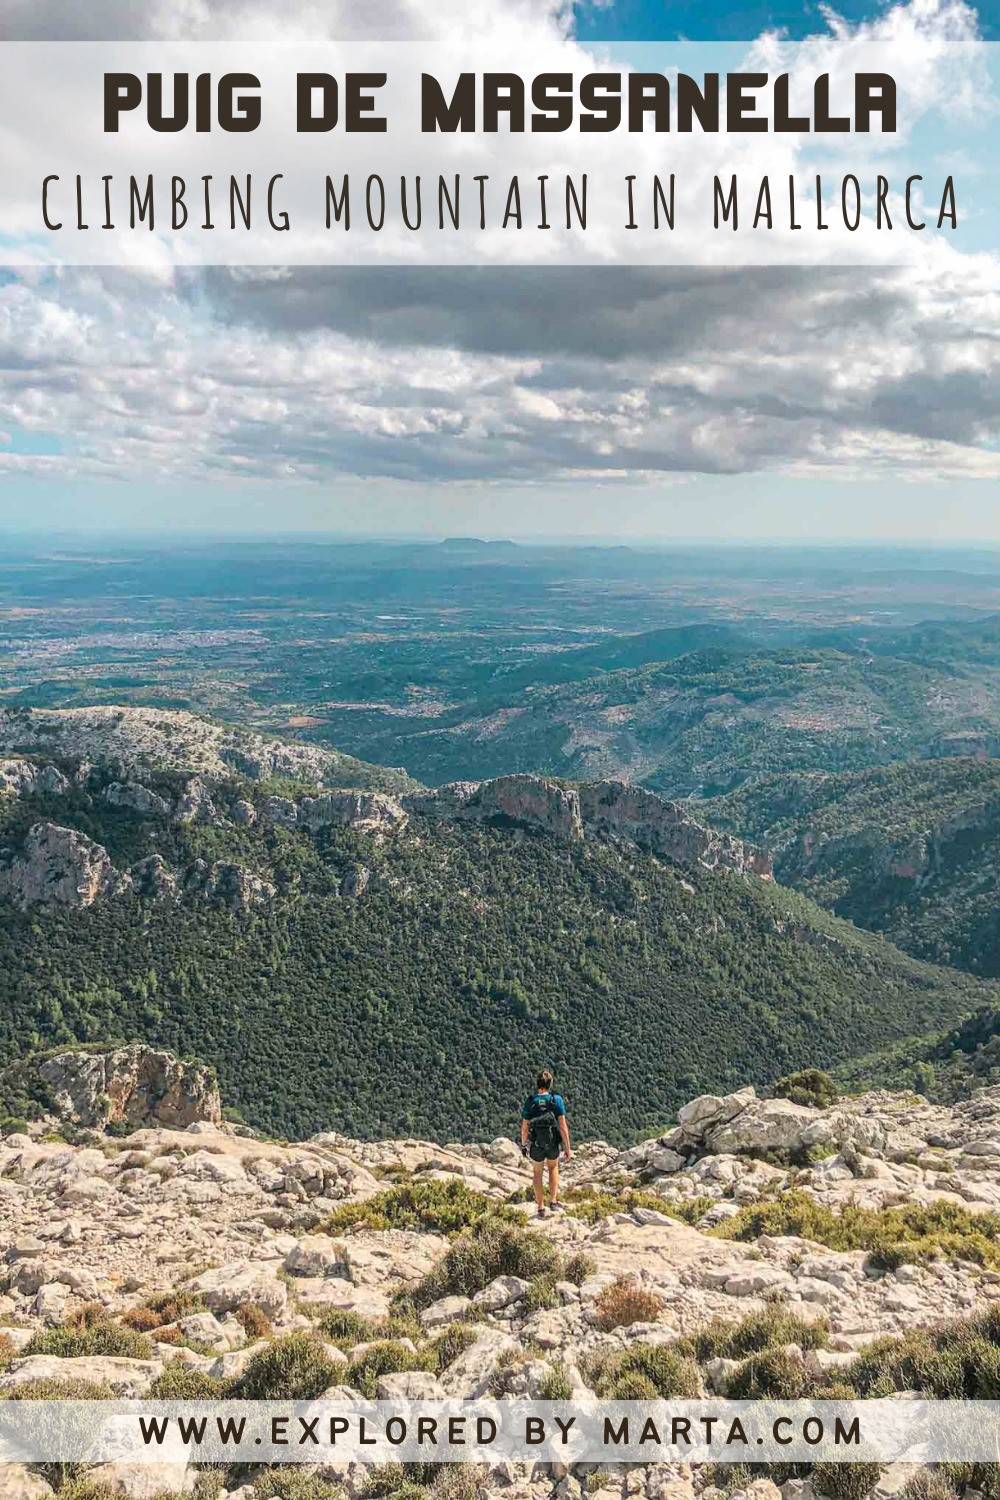 Climbing Puig de Massanella mountain in Mallorca